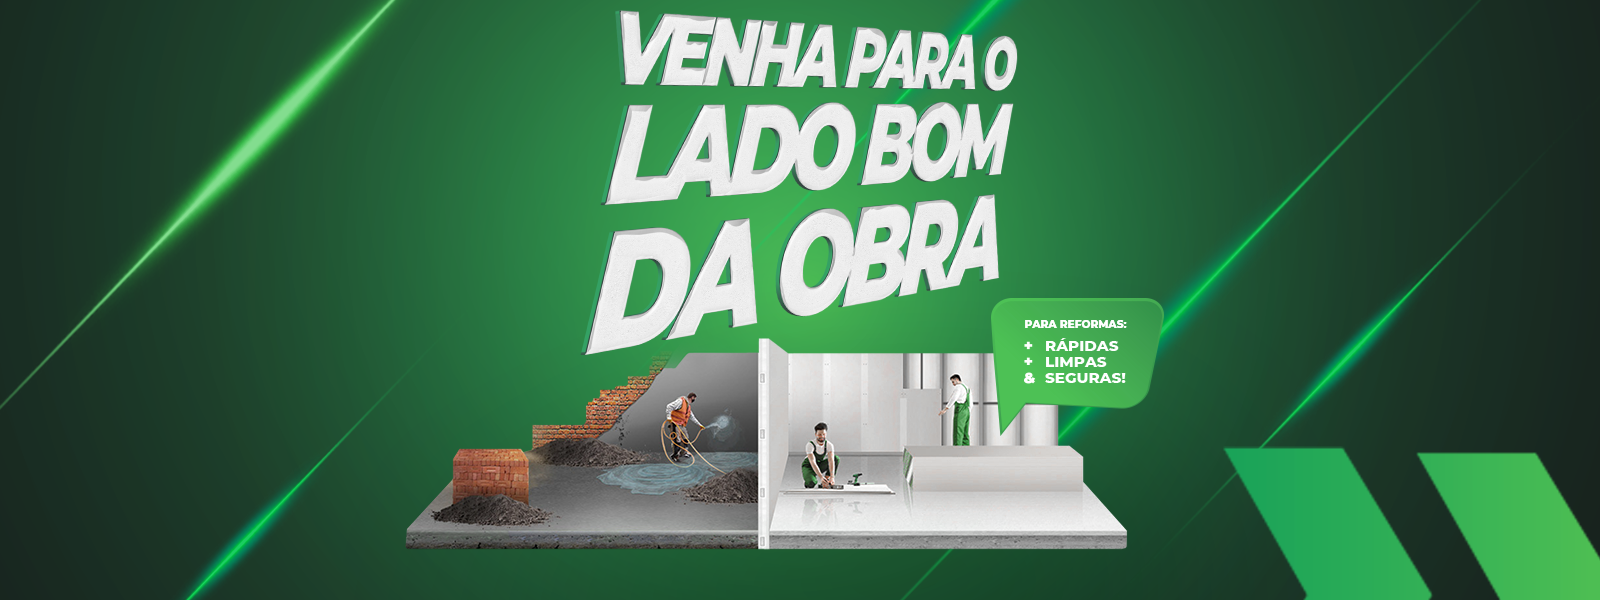 banner_lado_bom_da_obra